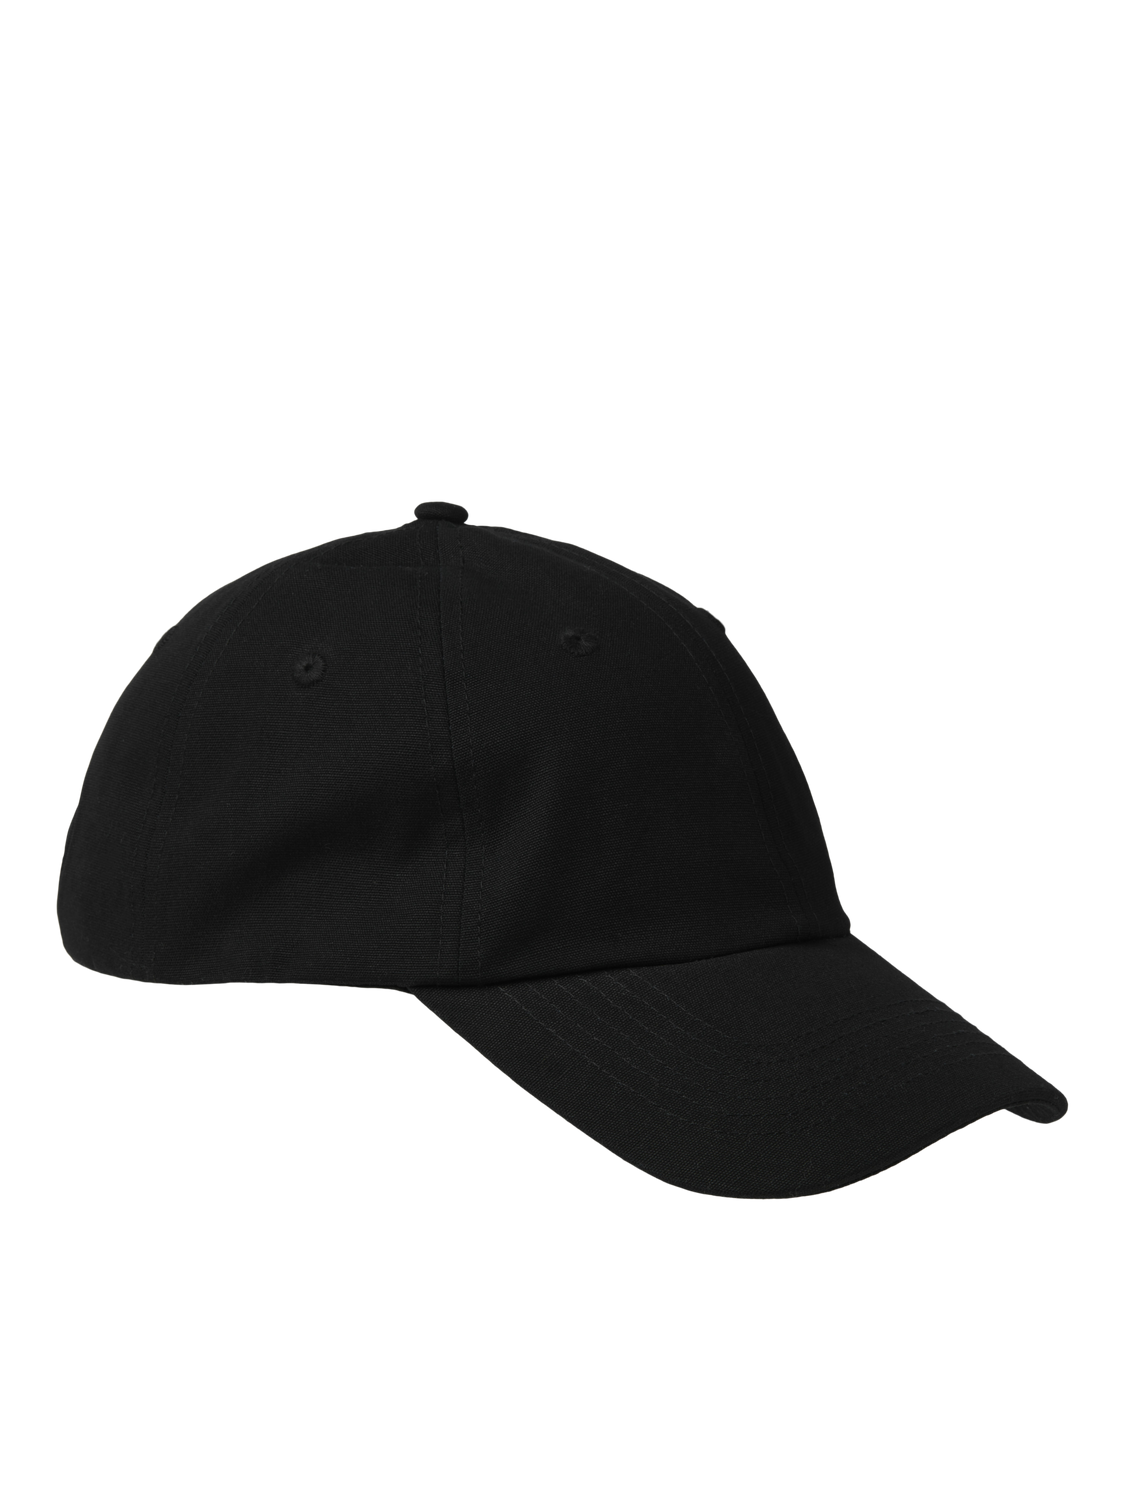 JJXX JXBEE Baseball cap -Black - 12250795